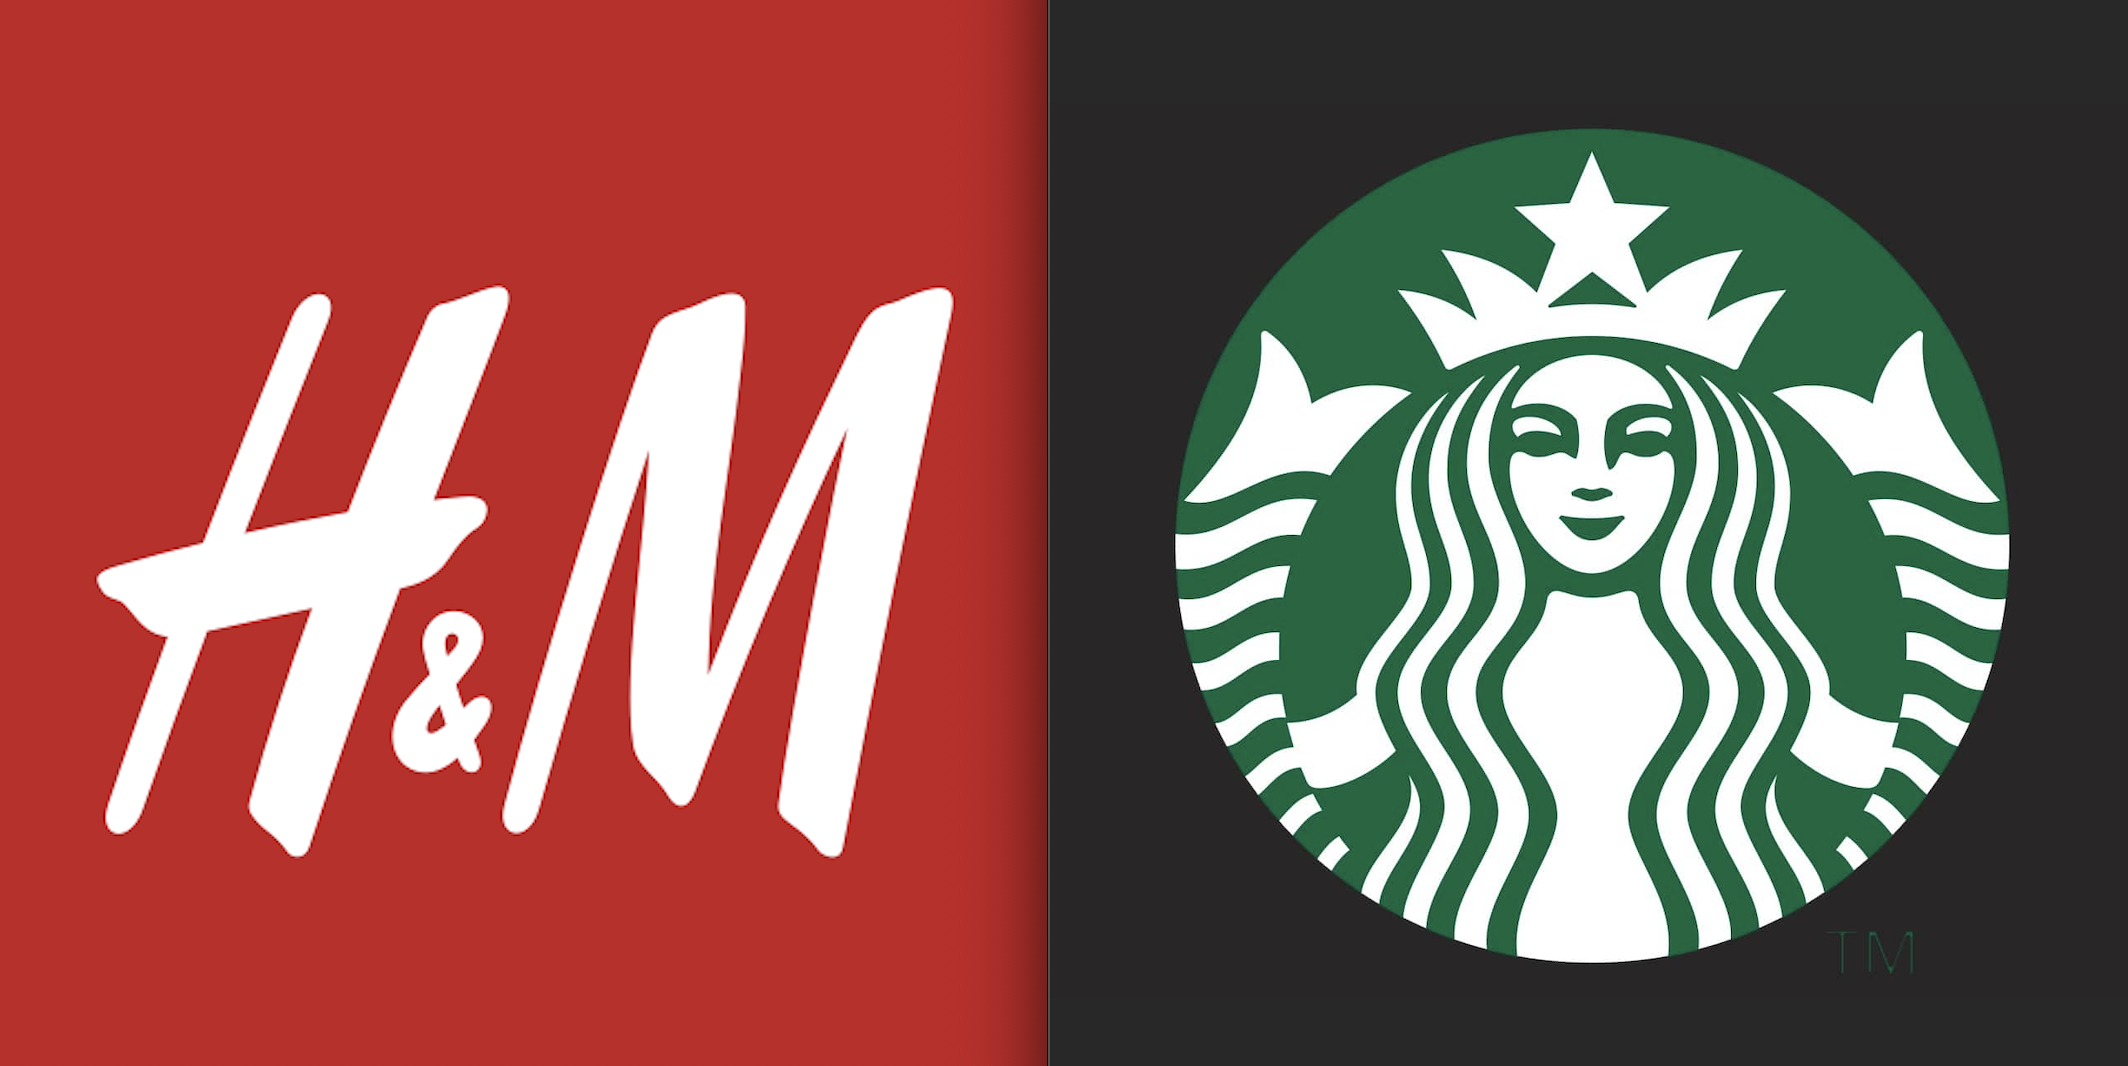 H&M et Starbucks ne quitteront pas le Maroc, selon le groupe Alshaya